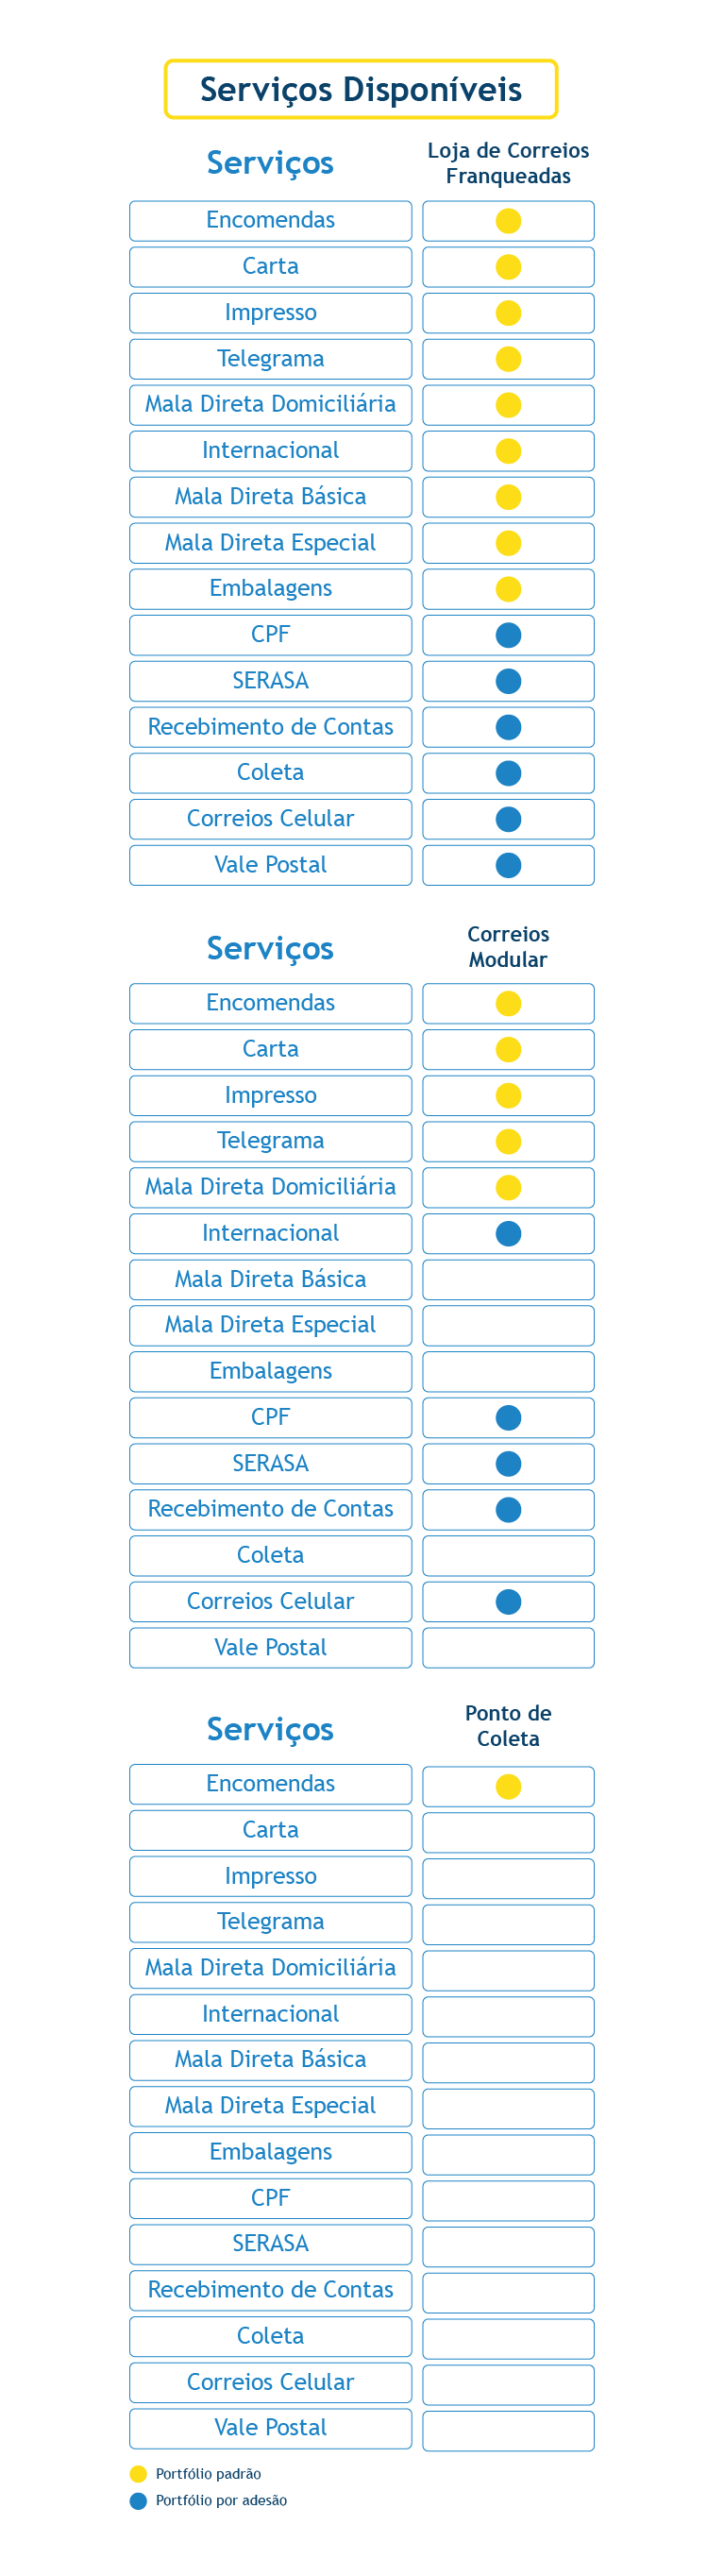 Apresentação da lista dos serviços disponíveis em cada um dos modelos de lojas dos correios